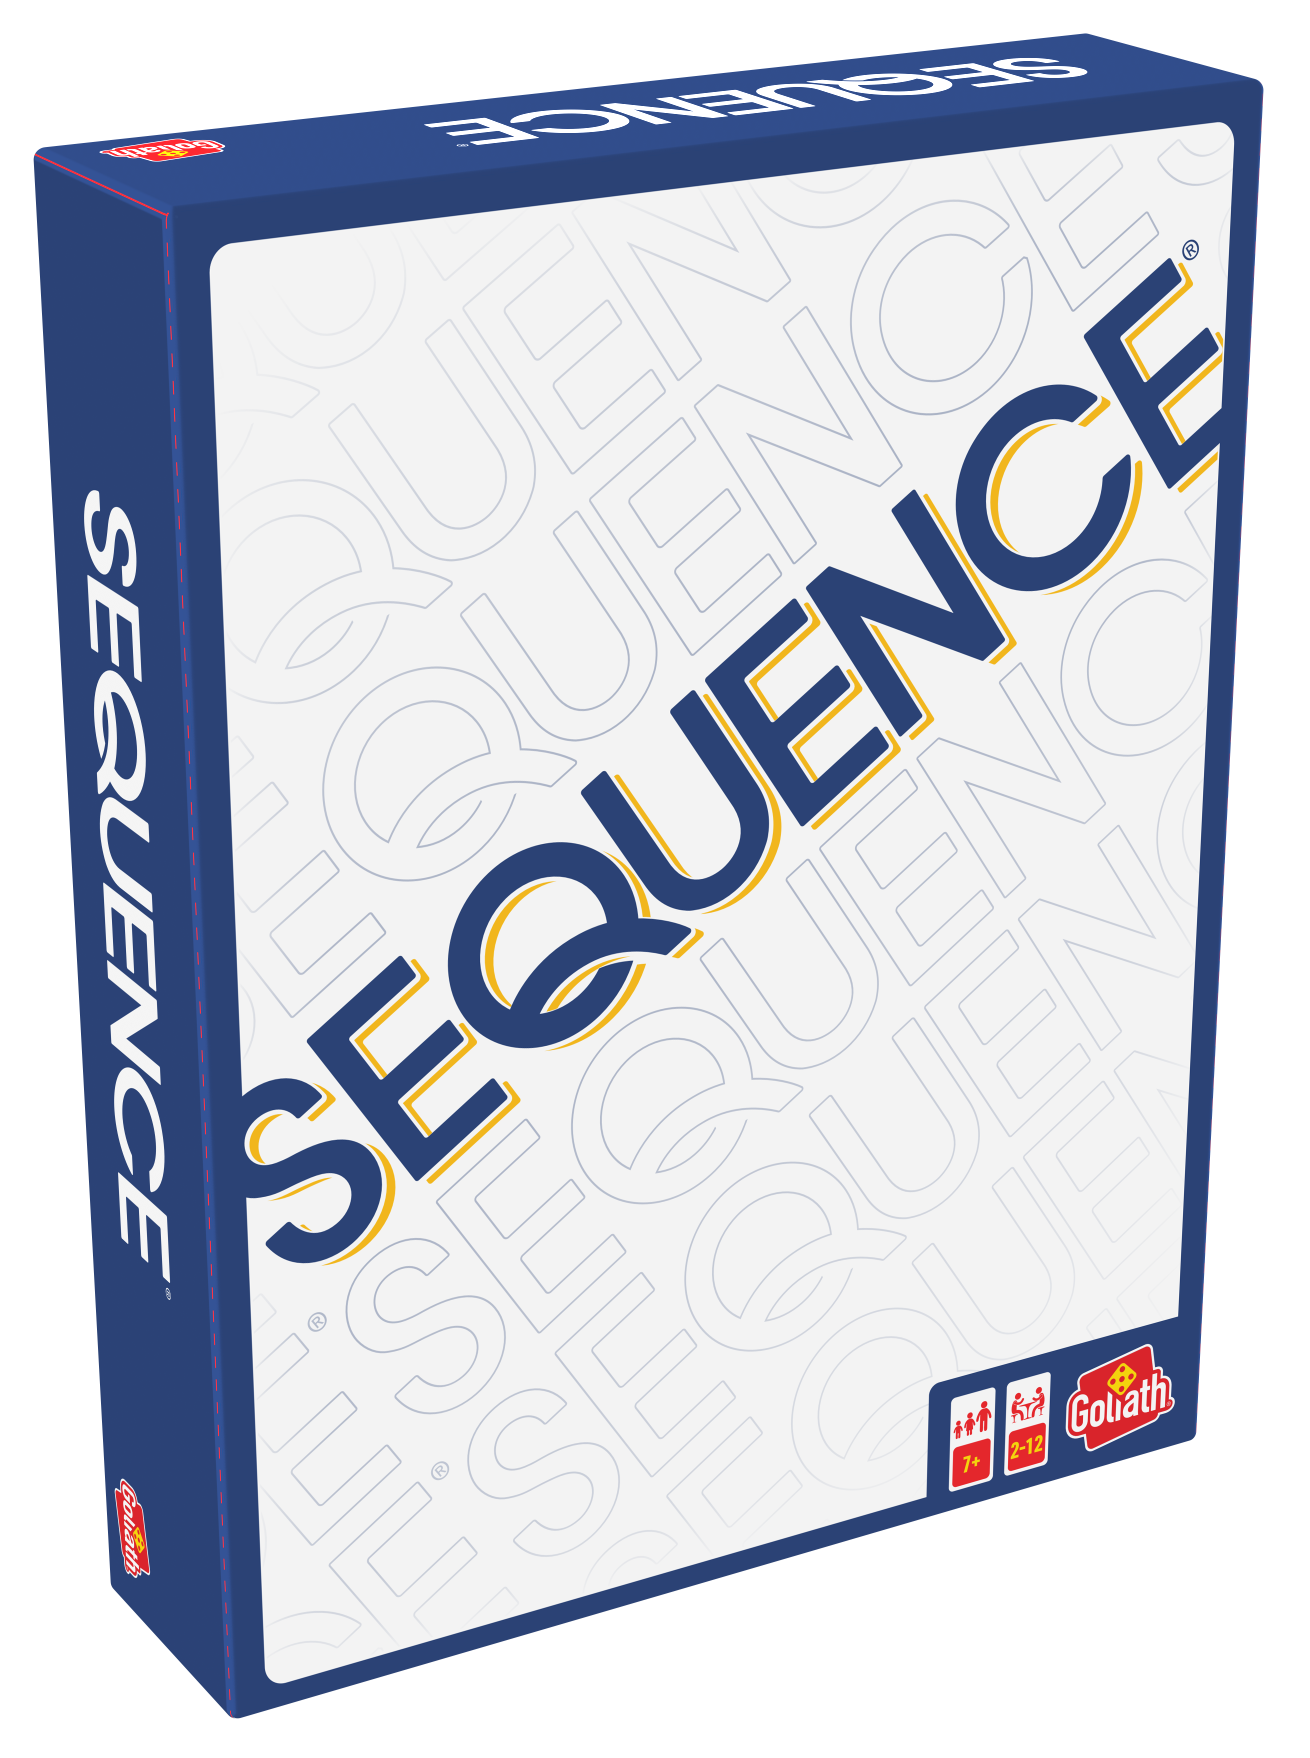 De doos van het strategische bordspel Sequence Original vanuit een linkerhoek